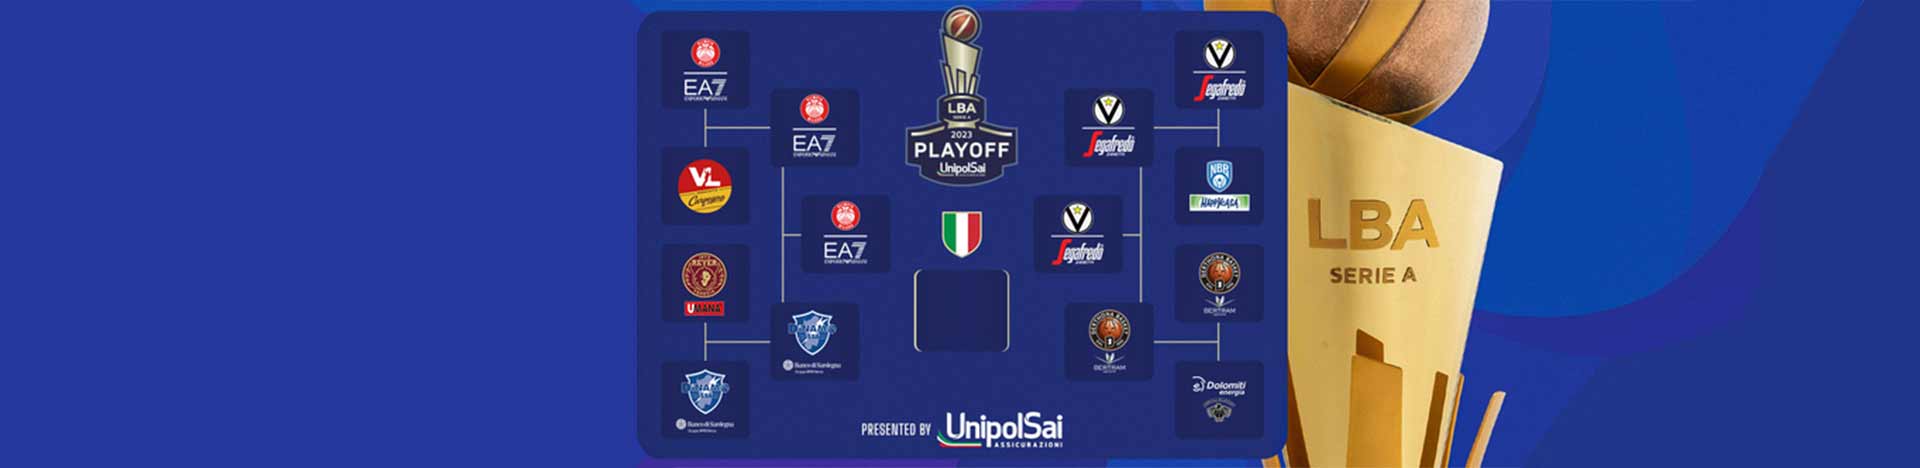 Serie A UnipolSai 2022/23 Finale playoff Gara1: <br>tabellone, risultati e programma prossime gare